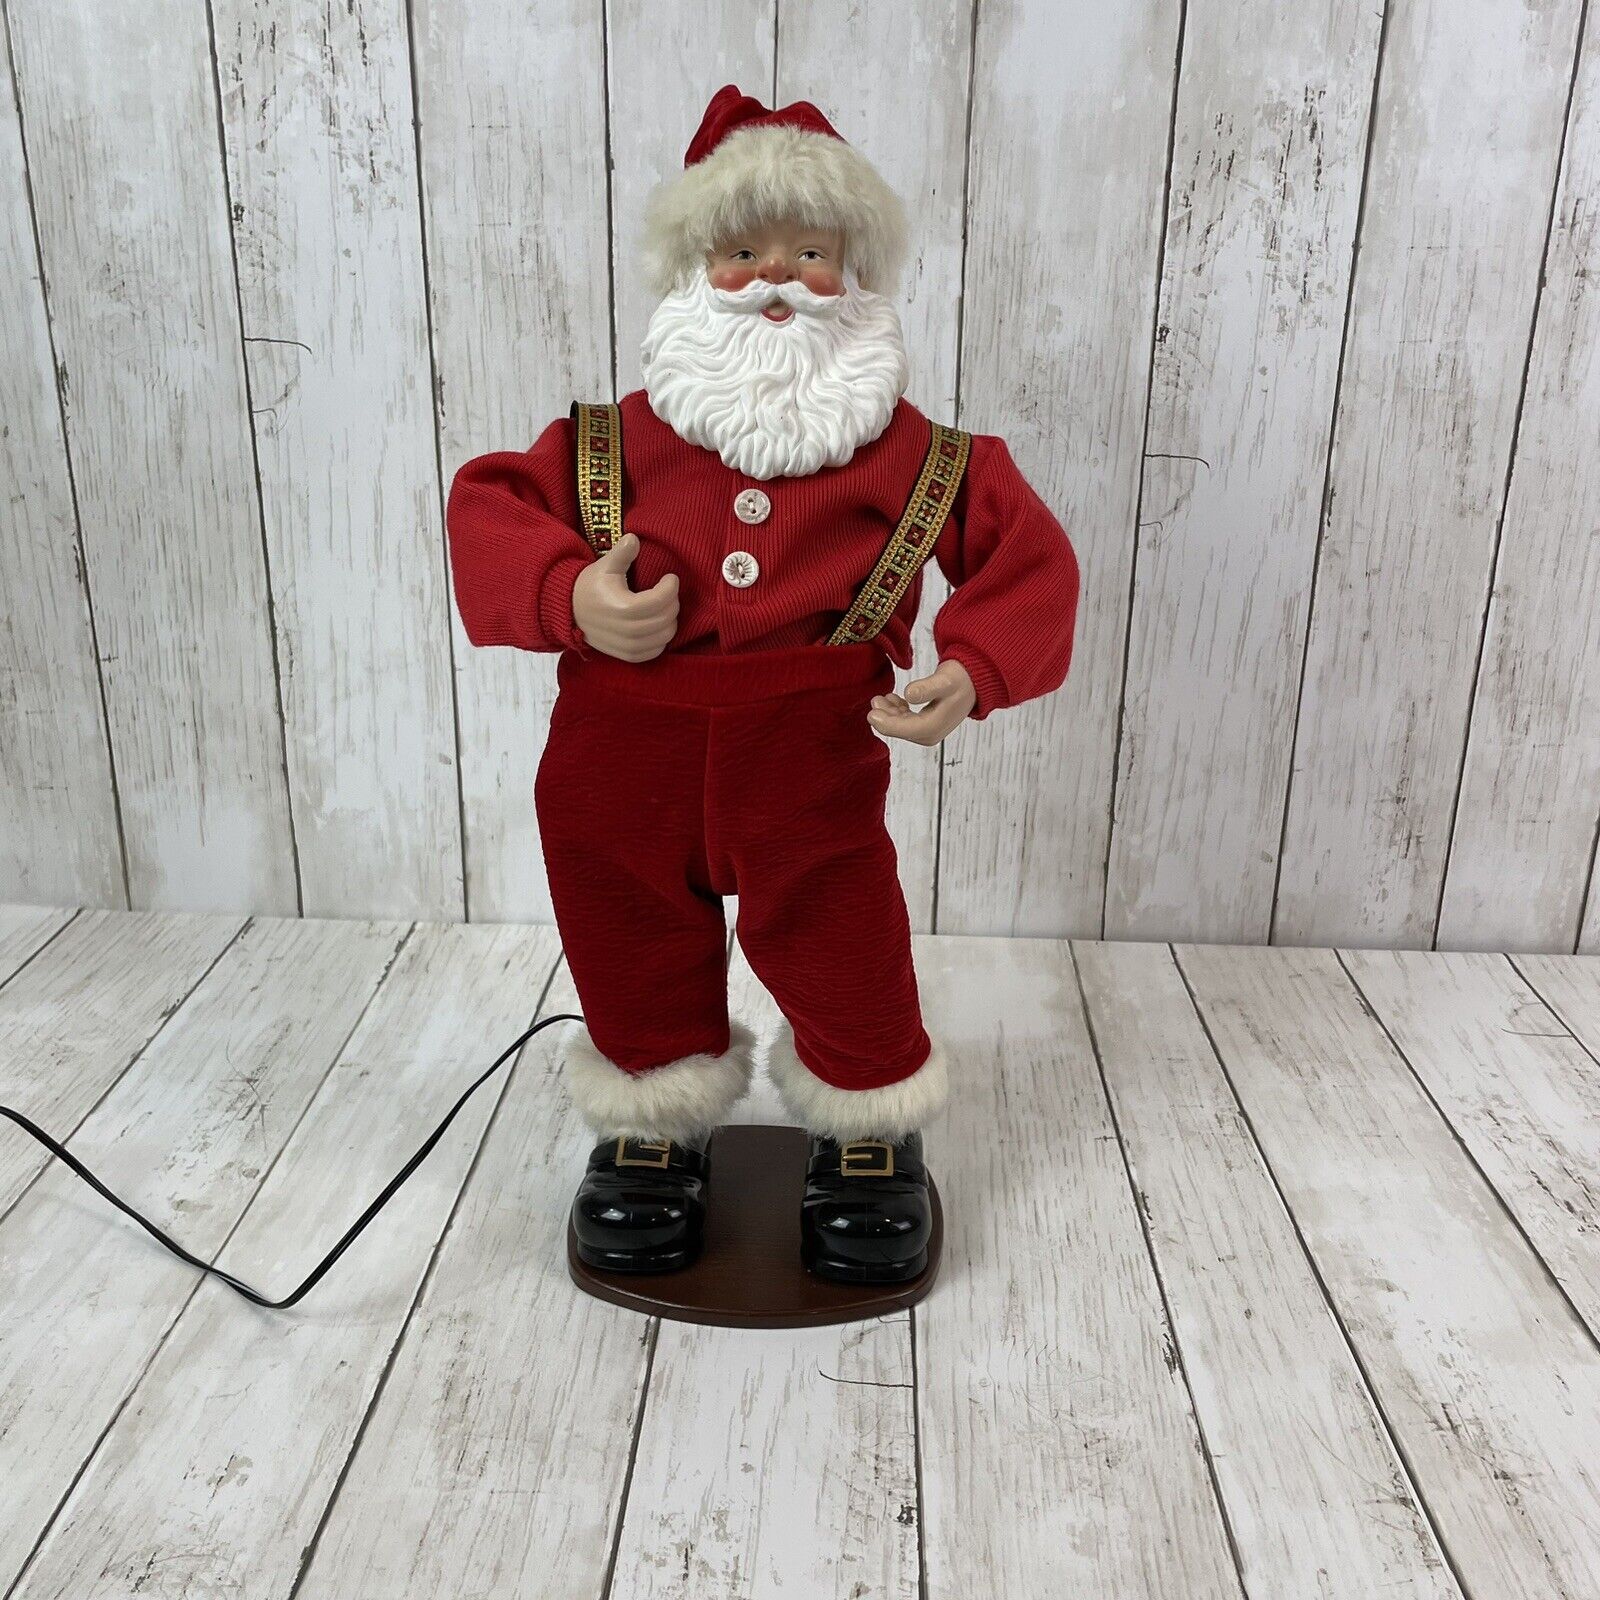 Jingle Bell Rock Santa Claus Animated Dancing Singing 16\